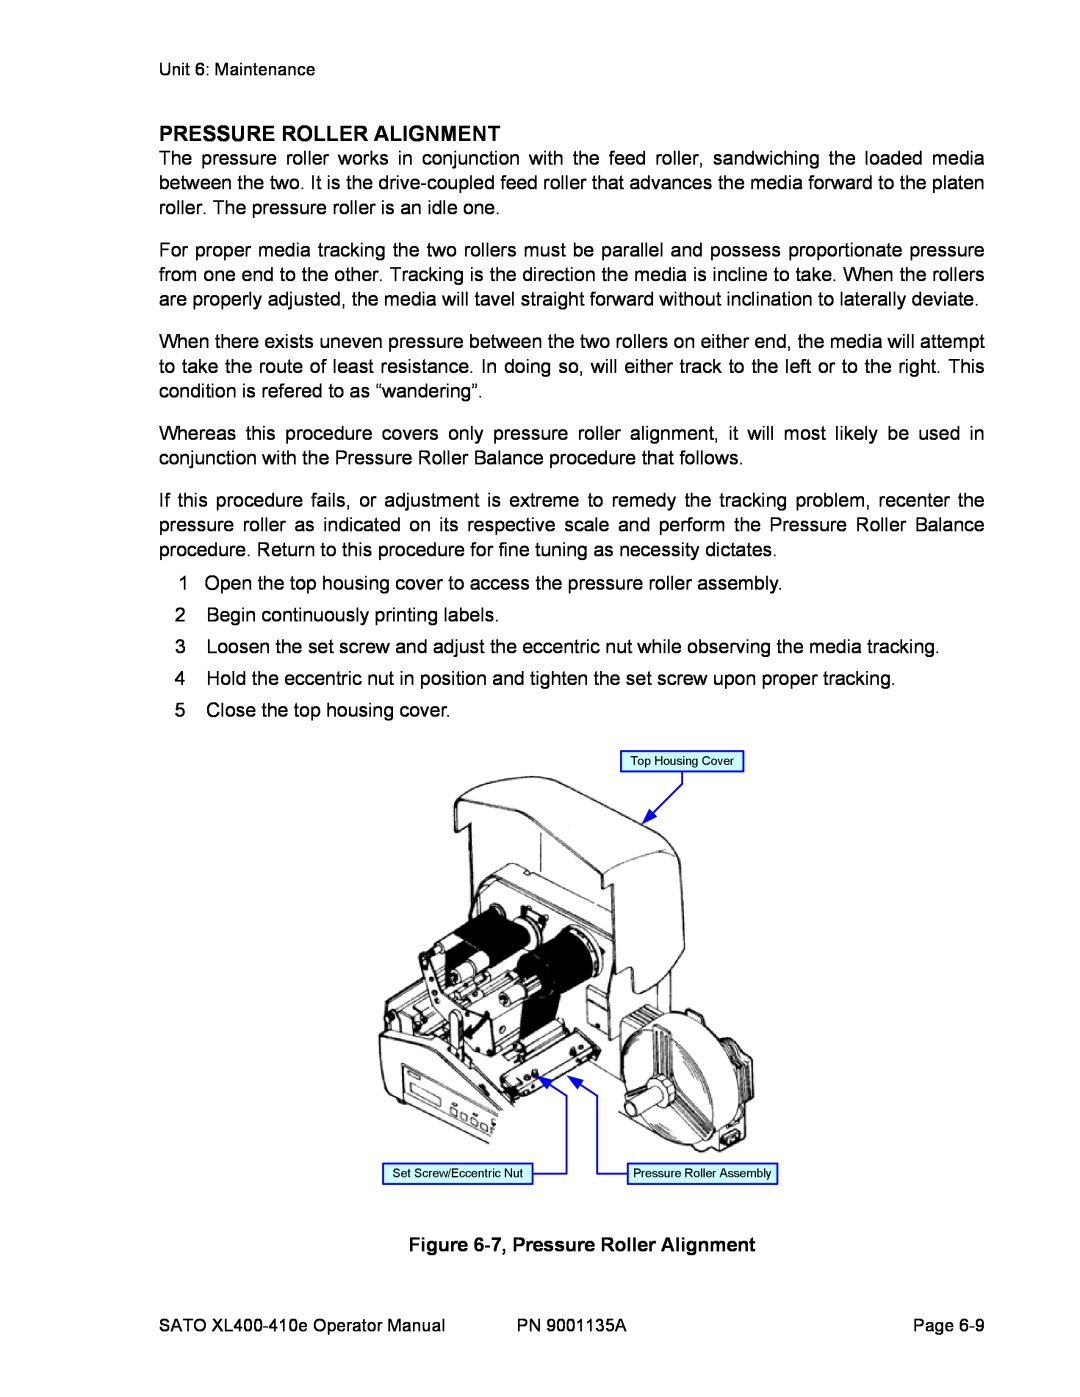 SATO 400e, 410e manual 7, Pressure Roller Alignment 